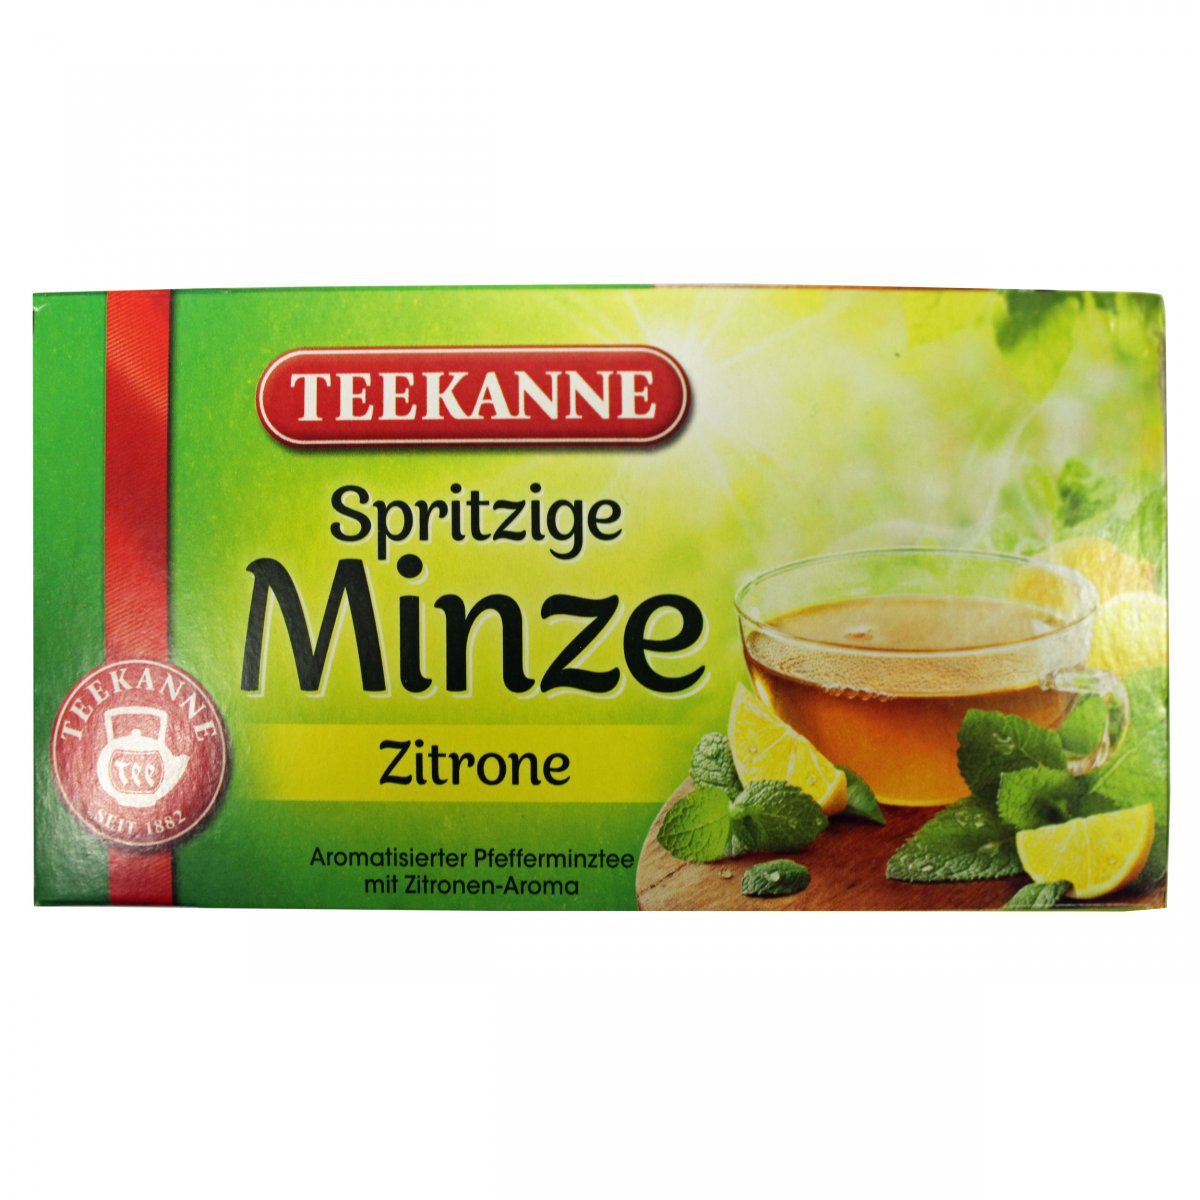 Teekanne- Spritzige Minze Zitrone (Peppermint Lemon) | European Grocery